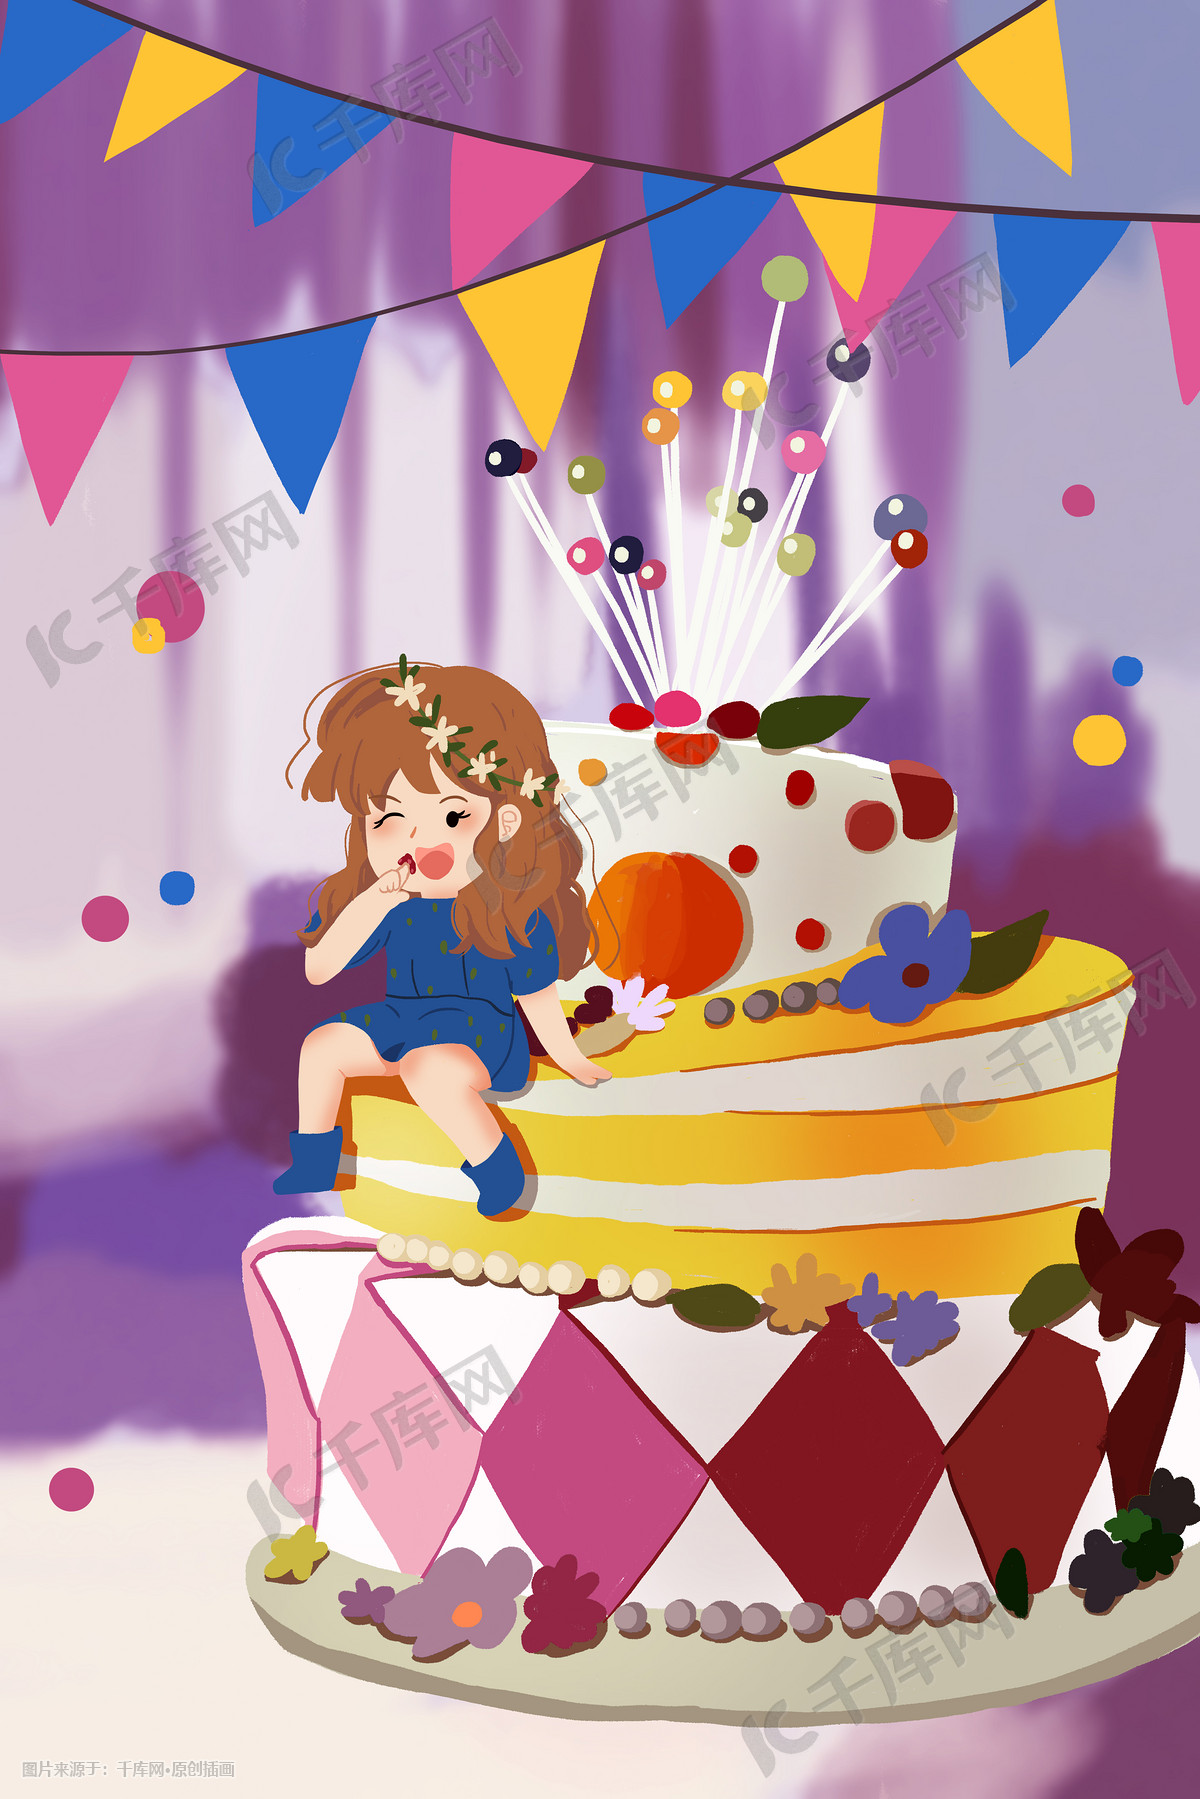 壁纸 : 色带, 叉子, 蛋糕, 指甲油, heart eyes, 吃, 黑发, 动漫女孩, 草莓, Heartki 2147x3215 ...